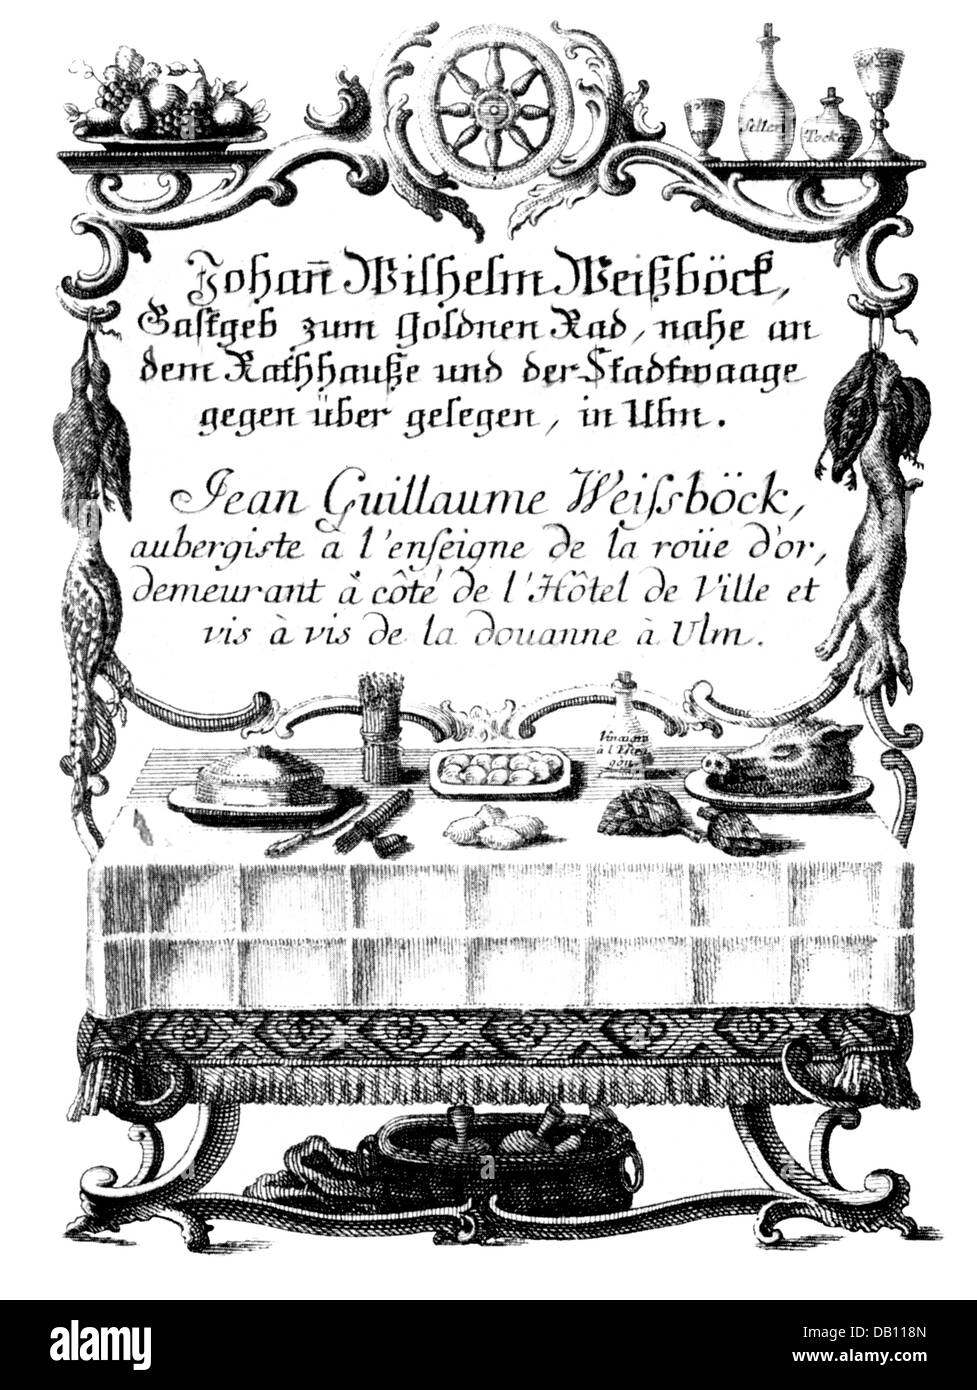 Gastronomie, hôtels, 'Goldenes Rad' à Ulm, brochure promotionnelle, gravure, vers 1800, droits supplémentaires-Clearences-non disponible Banque D'Images